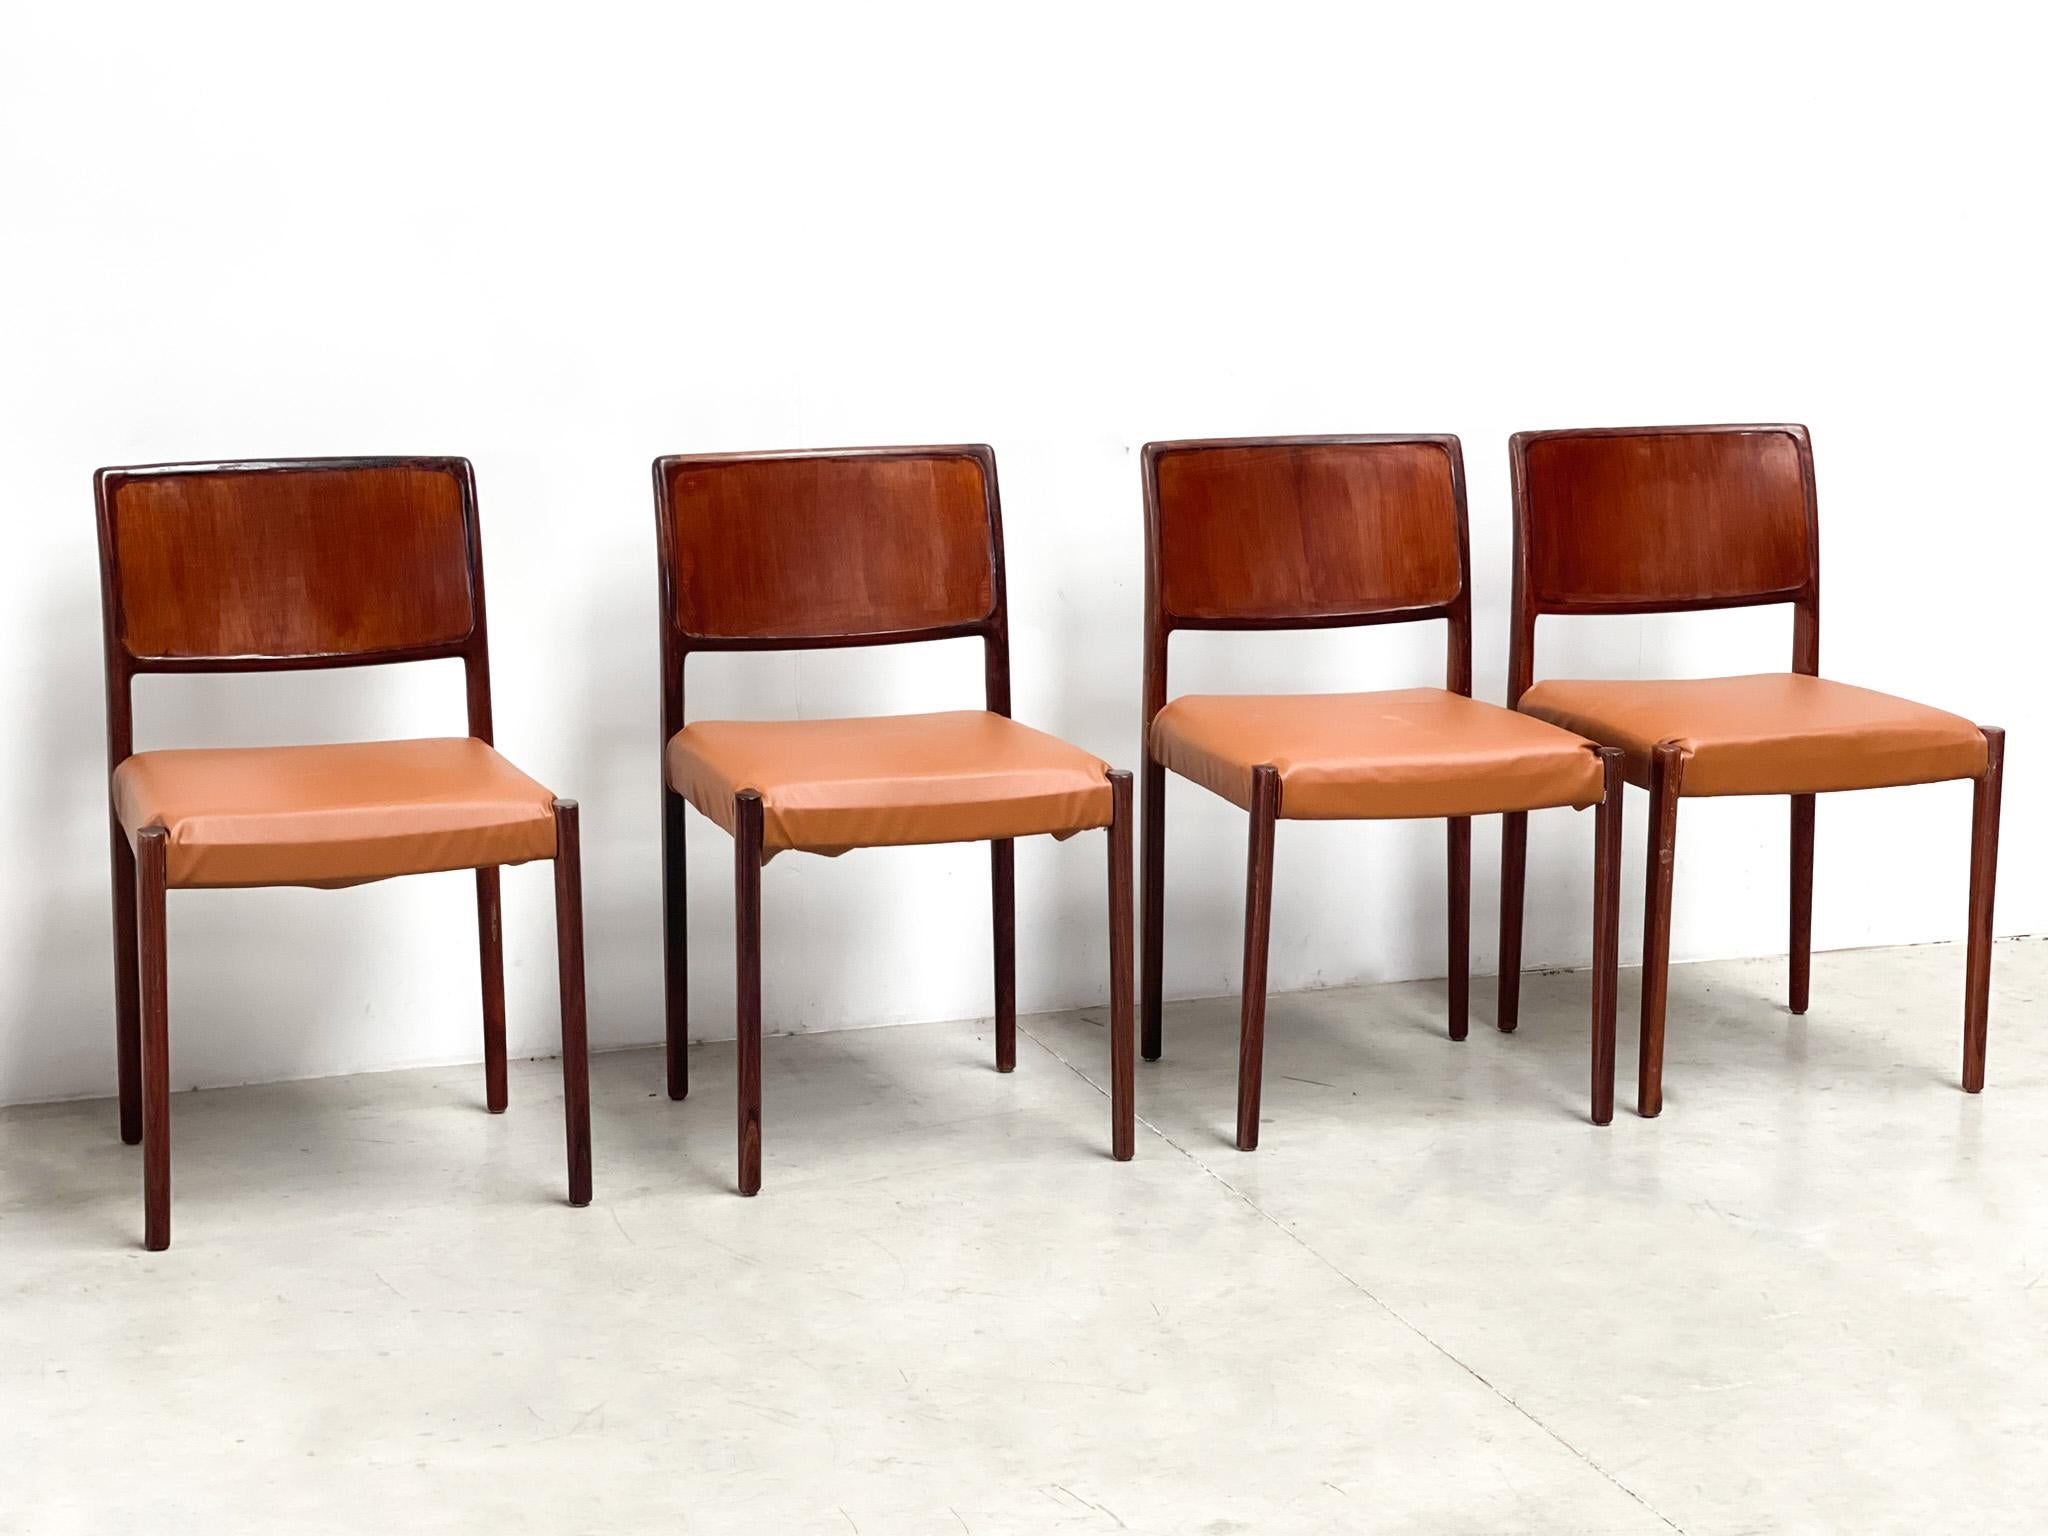 Chaises de salle à manger vintage en bois fabriquées au Danemark.

Cadre en bois avec revêtement en similicuir cognac

Années 1970 - Danemark

Bon état général avec une usure normale liée à l'âge des montures.

Dimensions :
Hauteur :